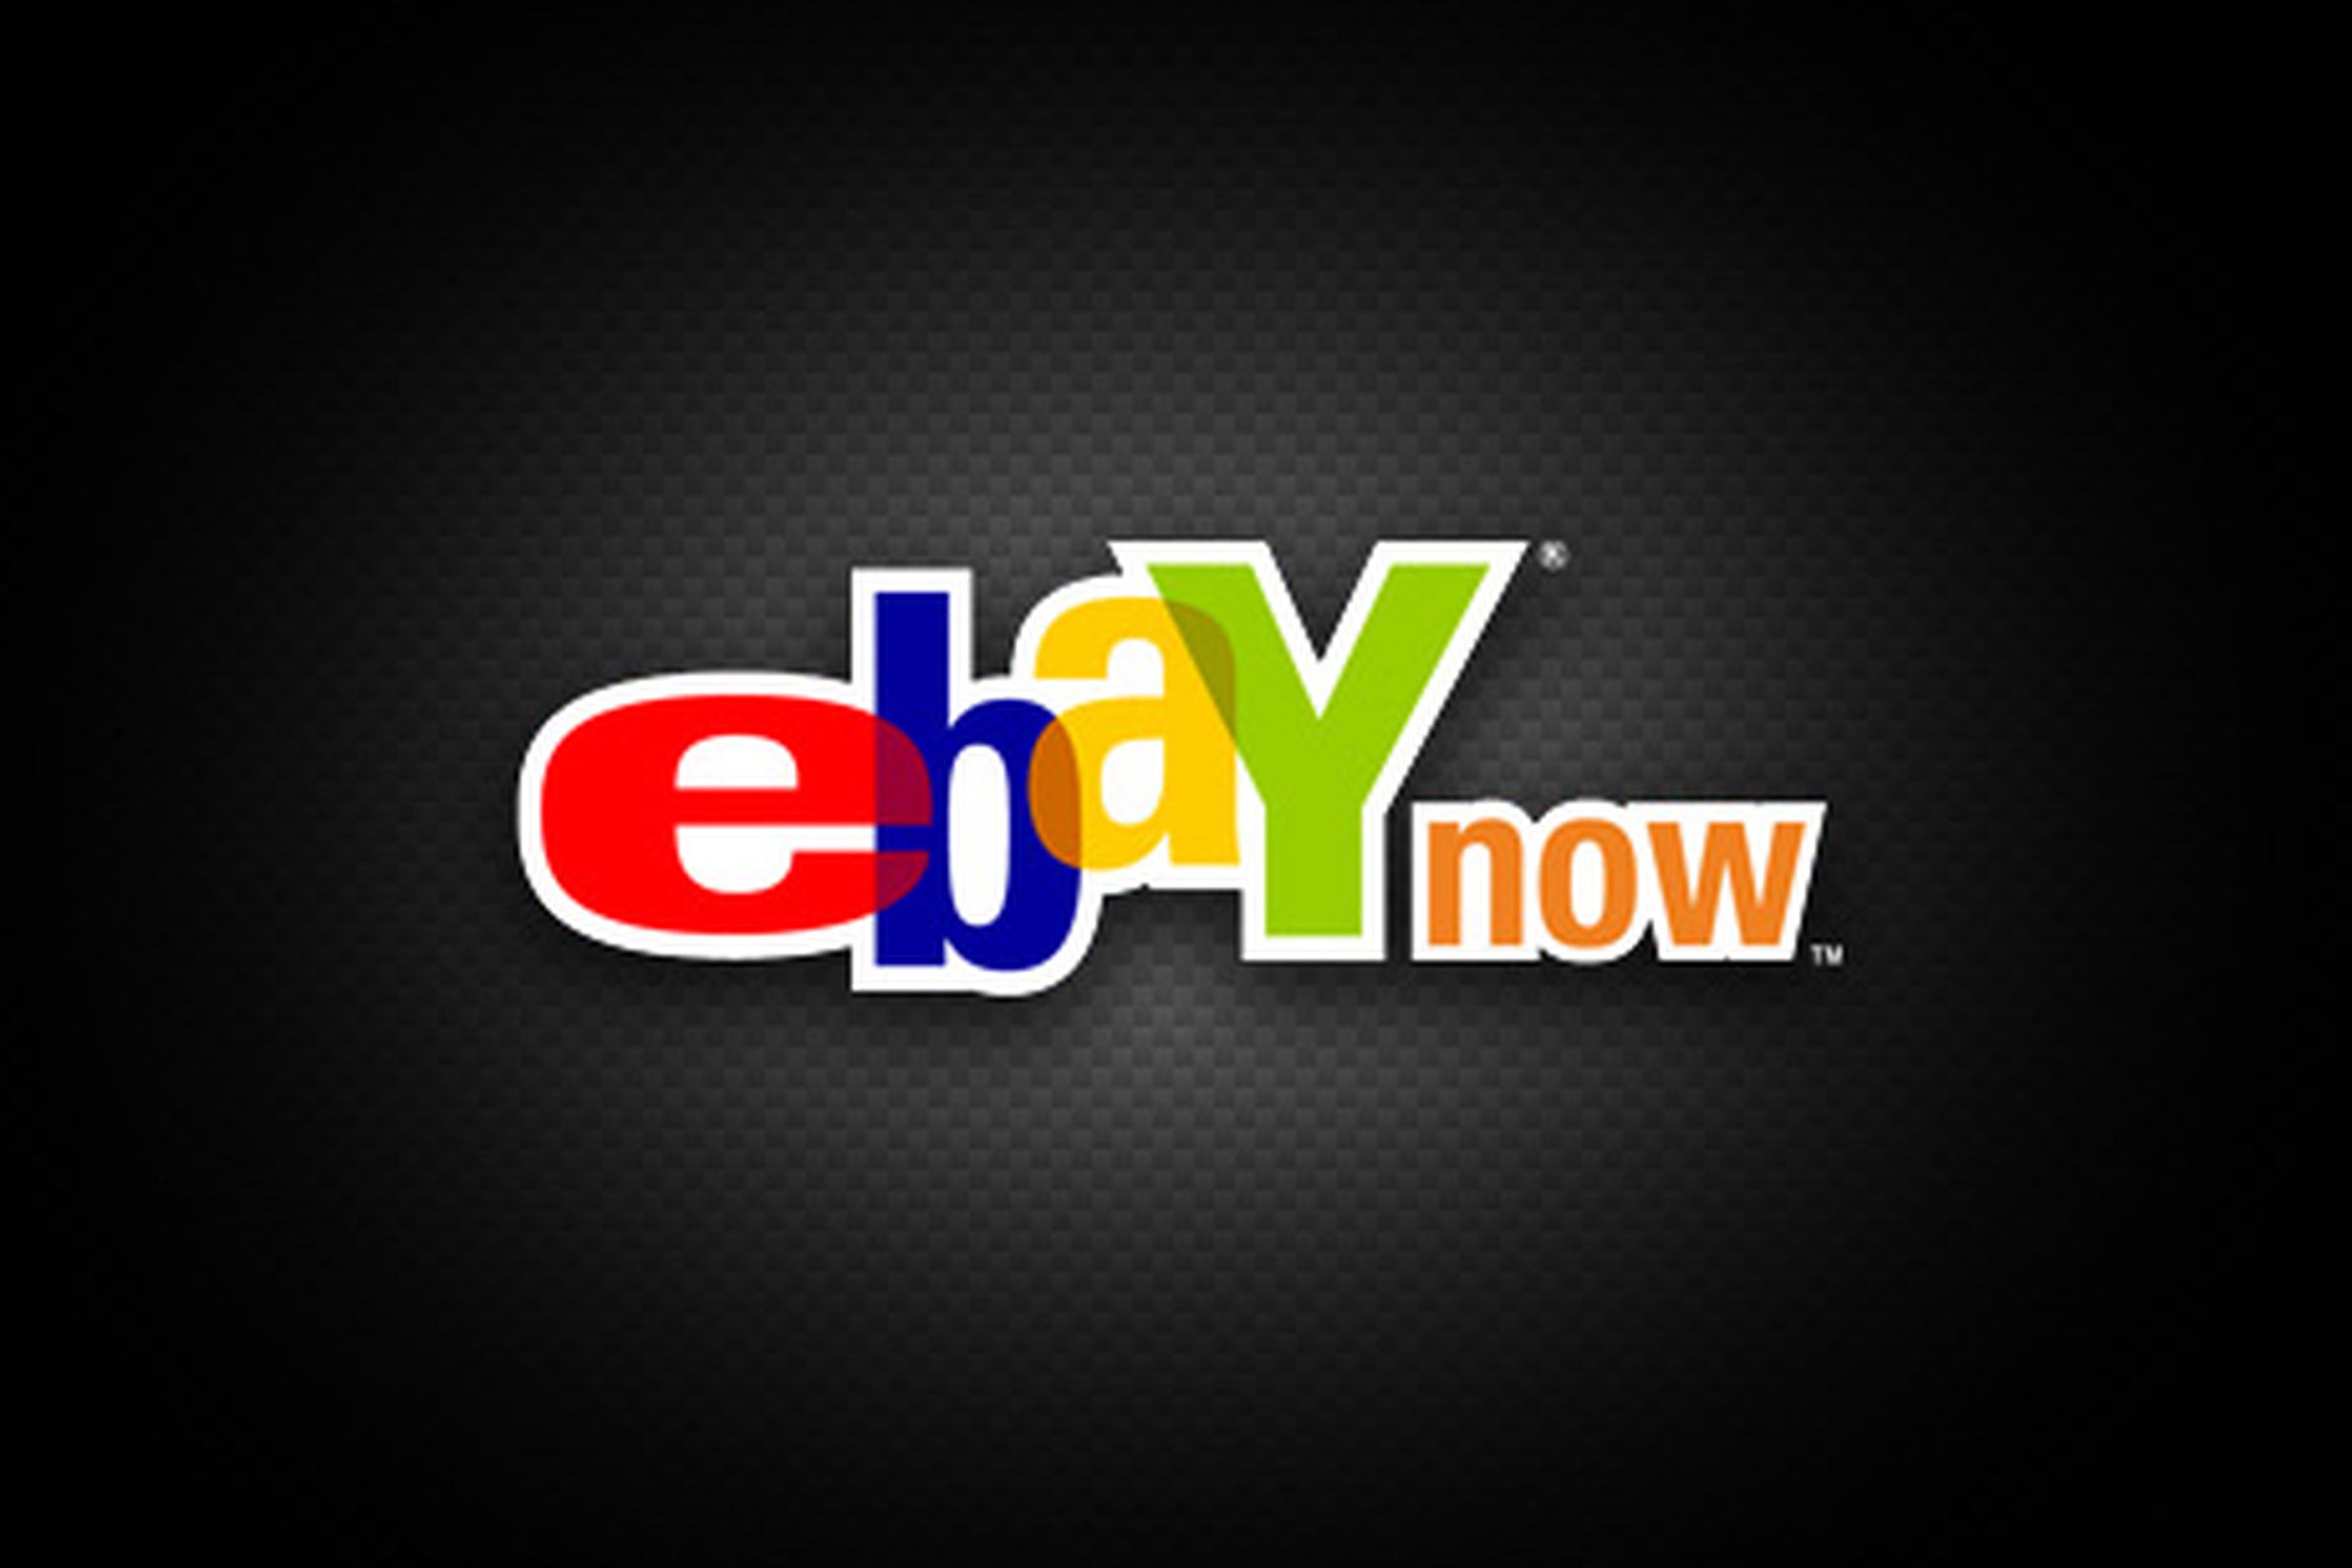 ebay now logo